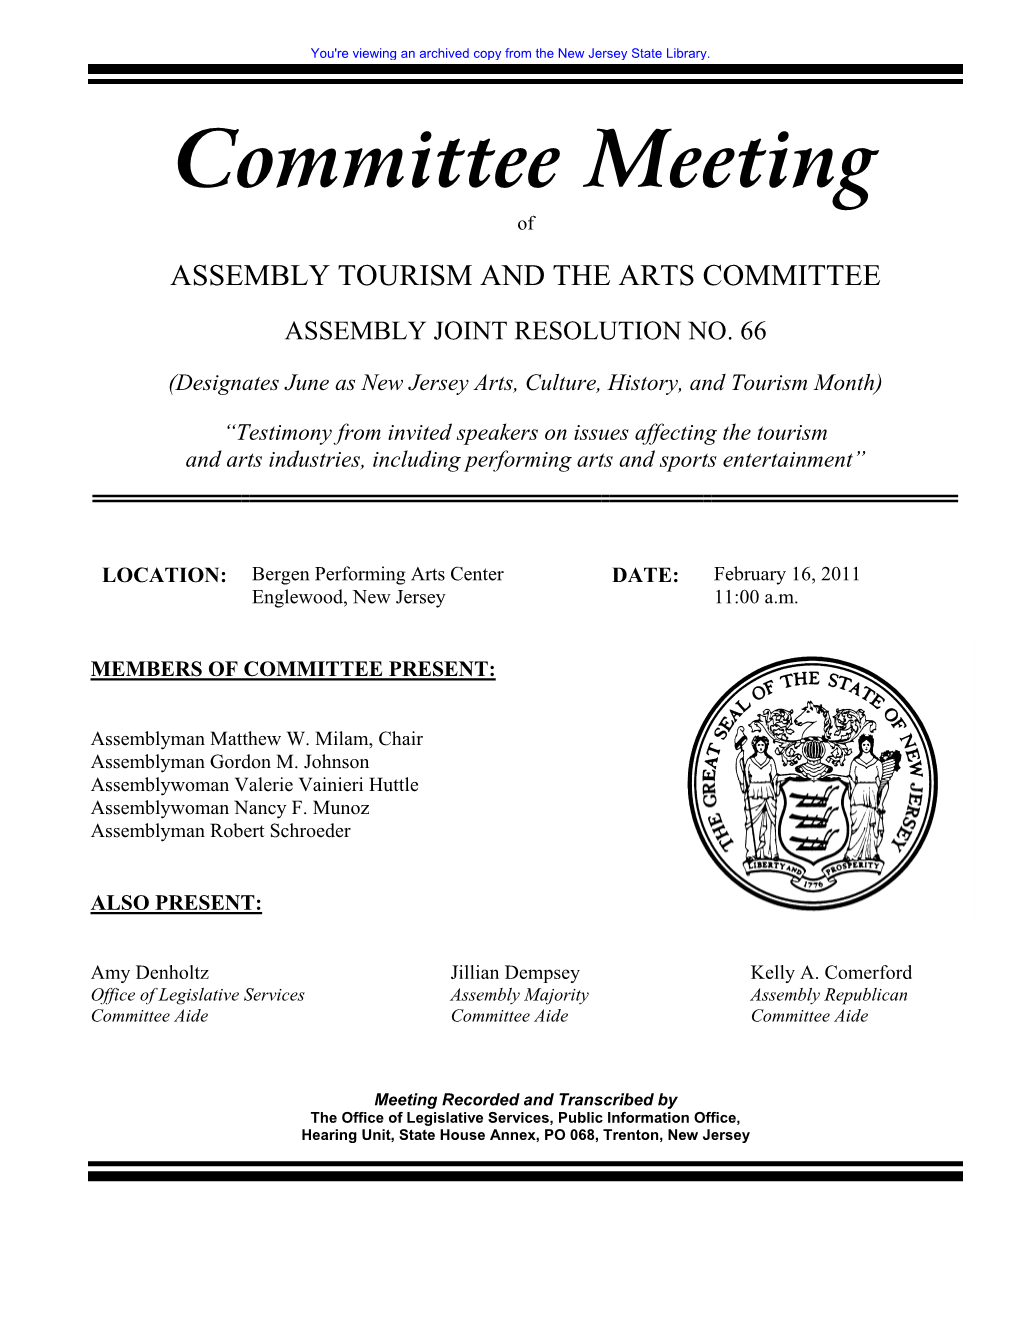 Committee Meeting Of